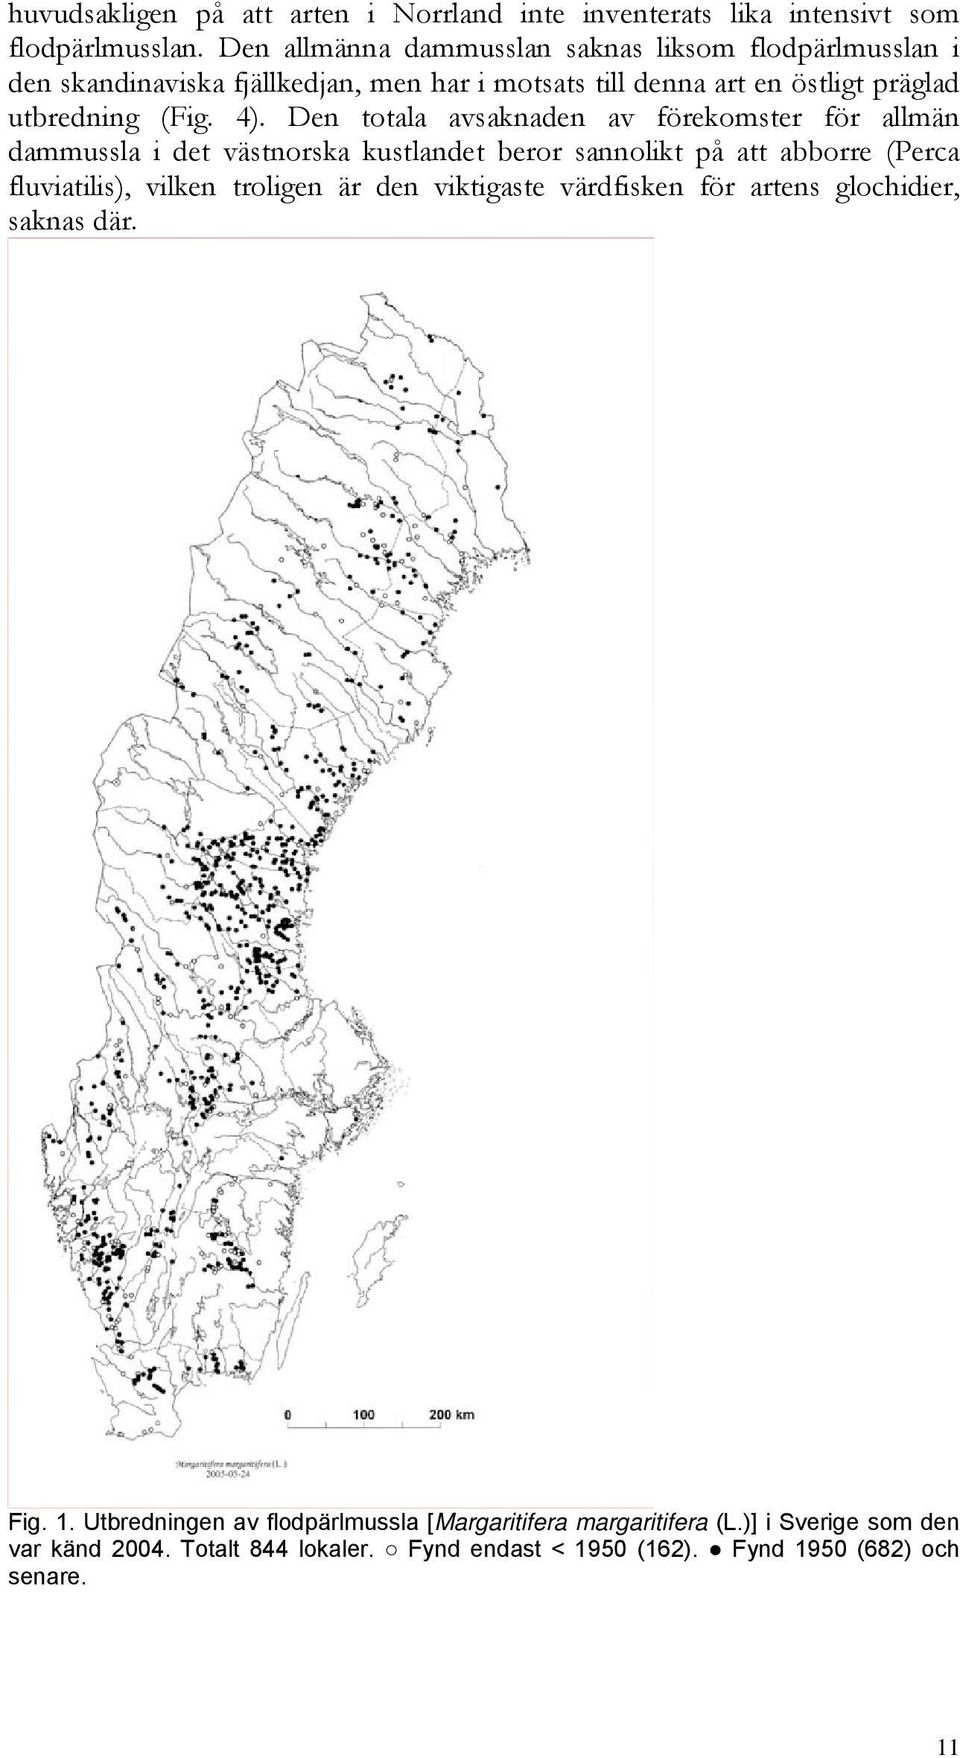 Den totala avsaknaden av förekomster för allmän dammussla i det västnorska kustlandet beror sannolikt på att abborre (Perca fluviatilis), vilken troligen är den